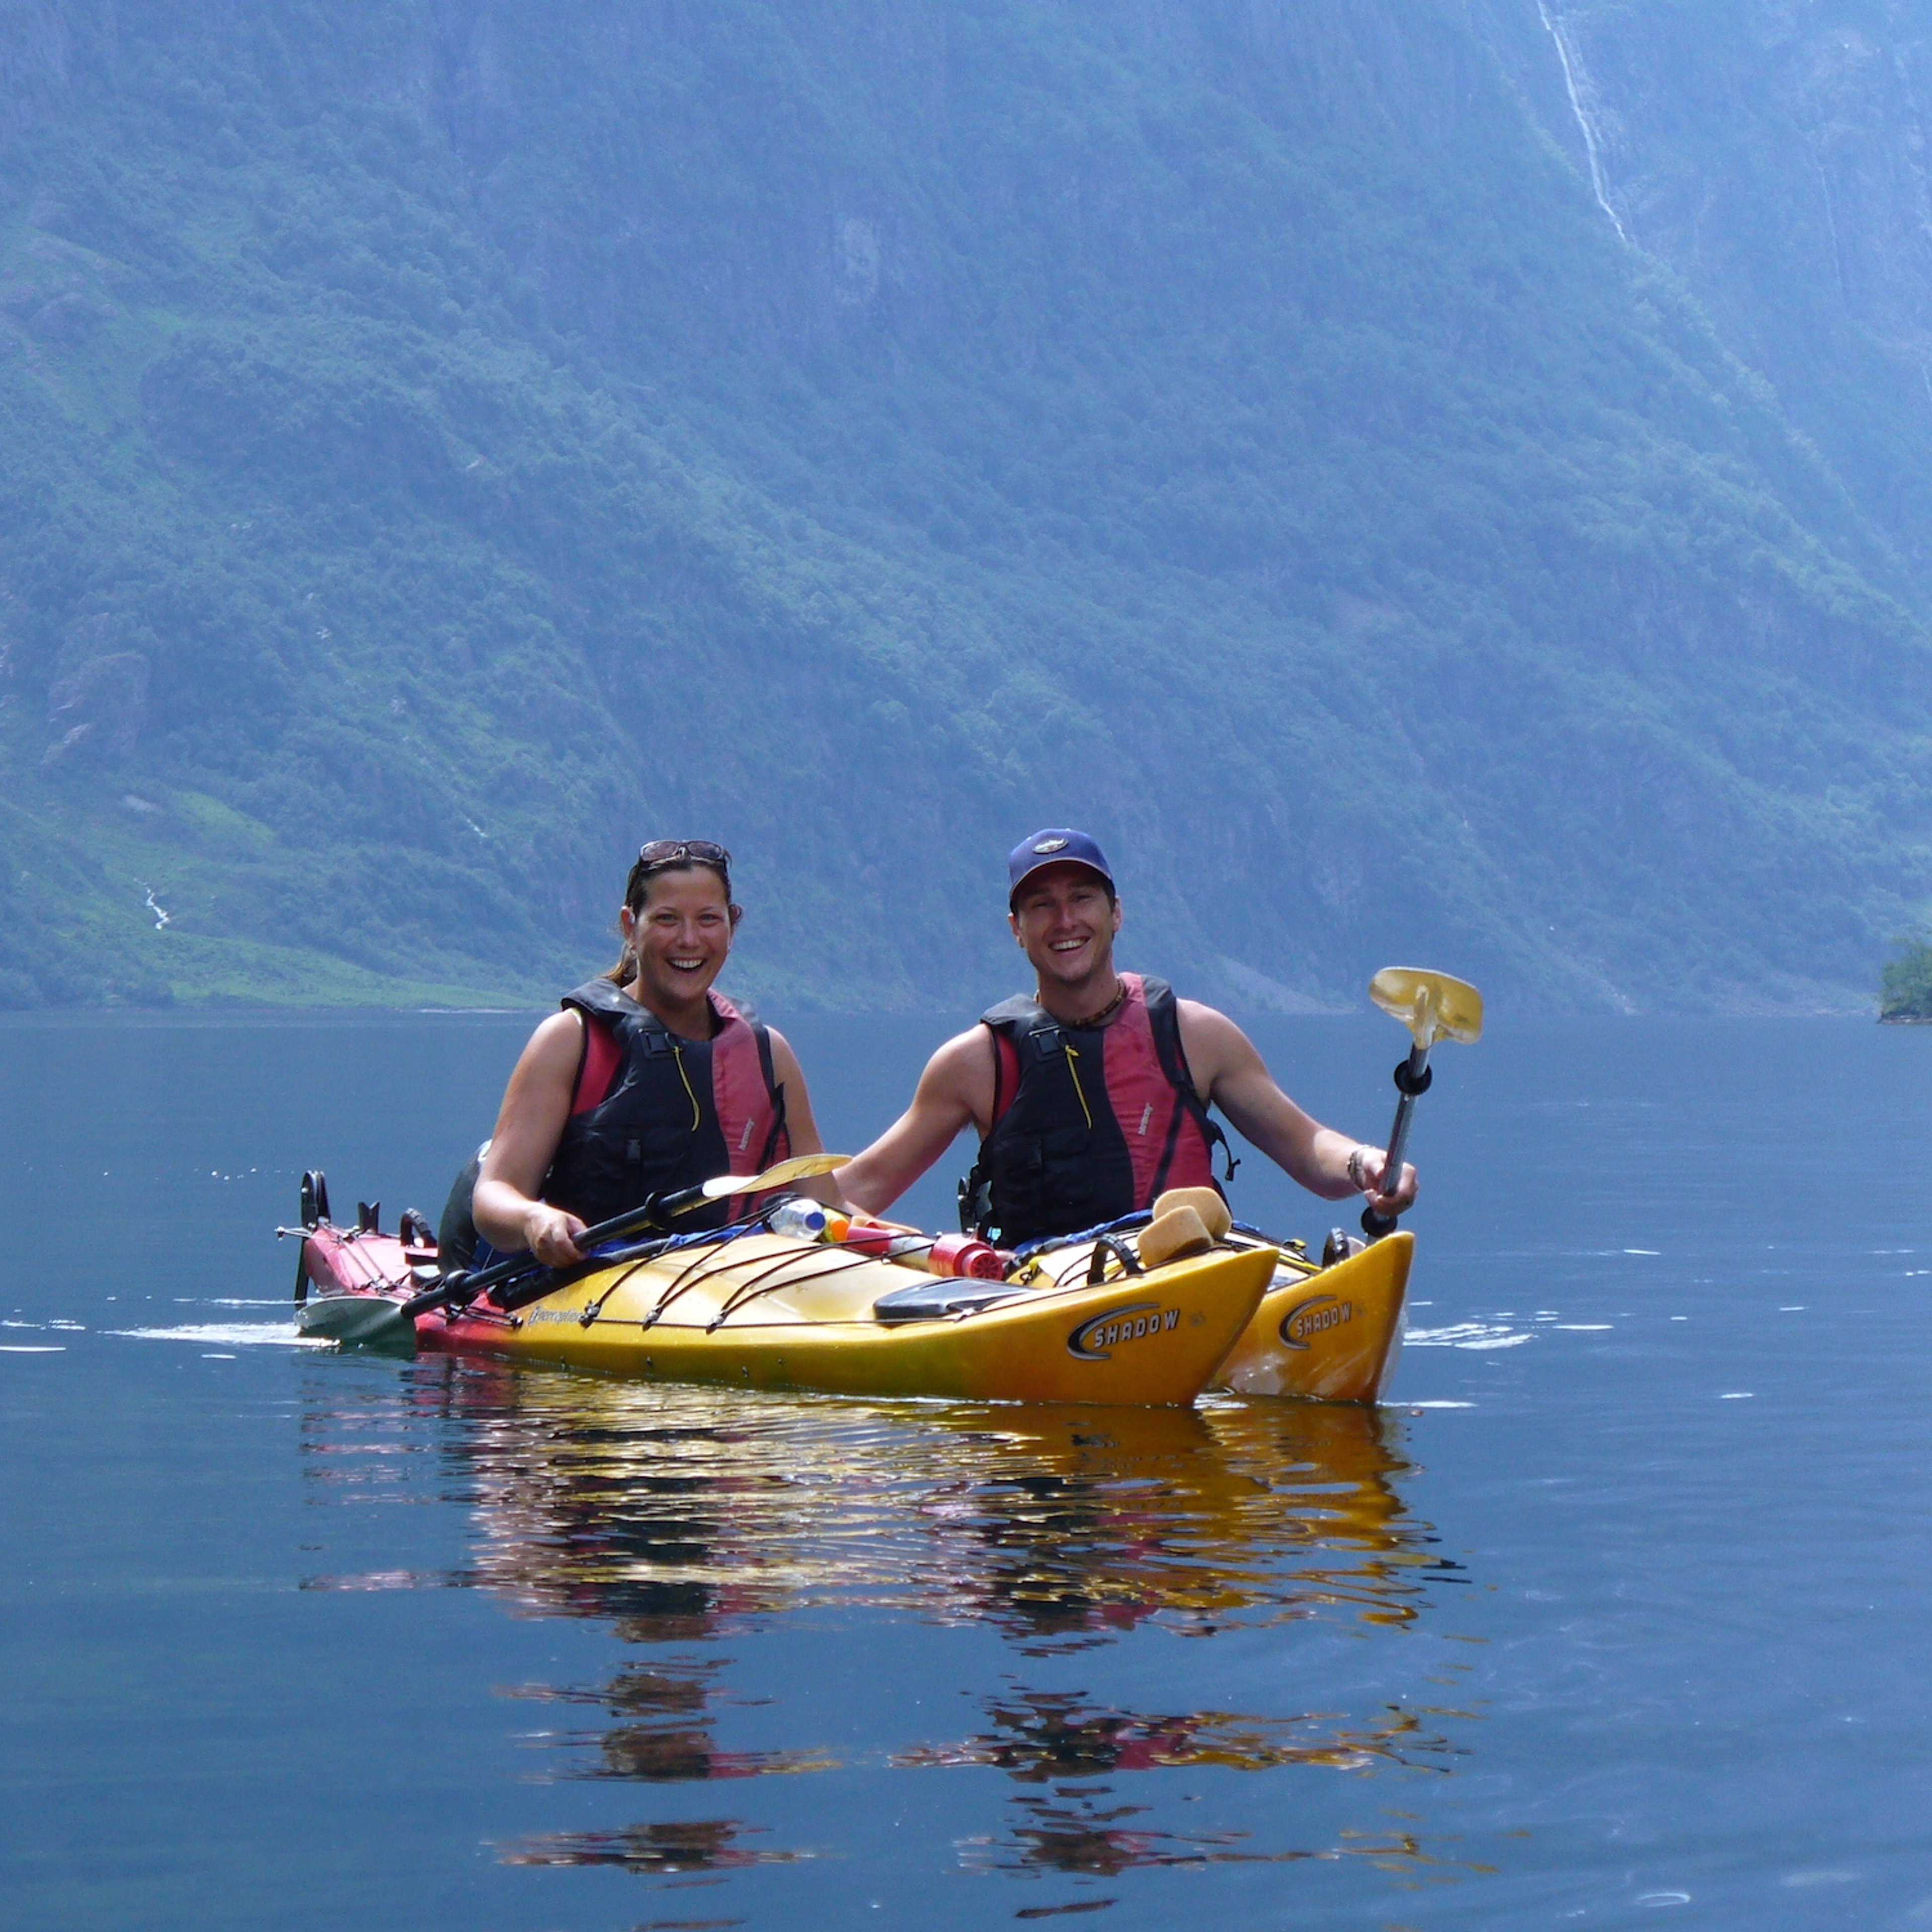 Geführte Kajaktour auf dem Nærøyfjord, Ganztagesausflug - Aktivitäten in Gudvangen, Norwegen